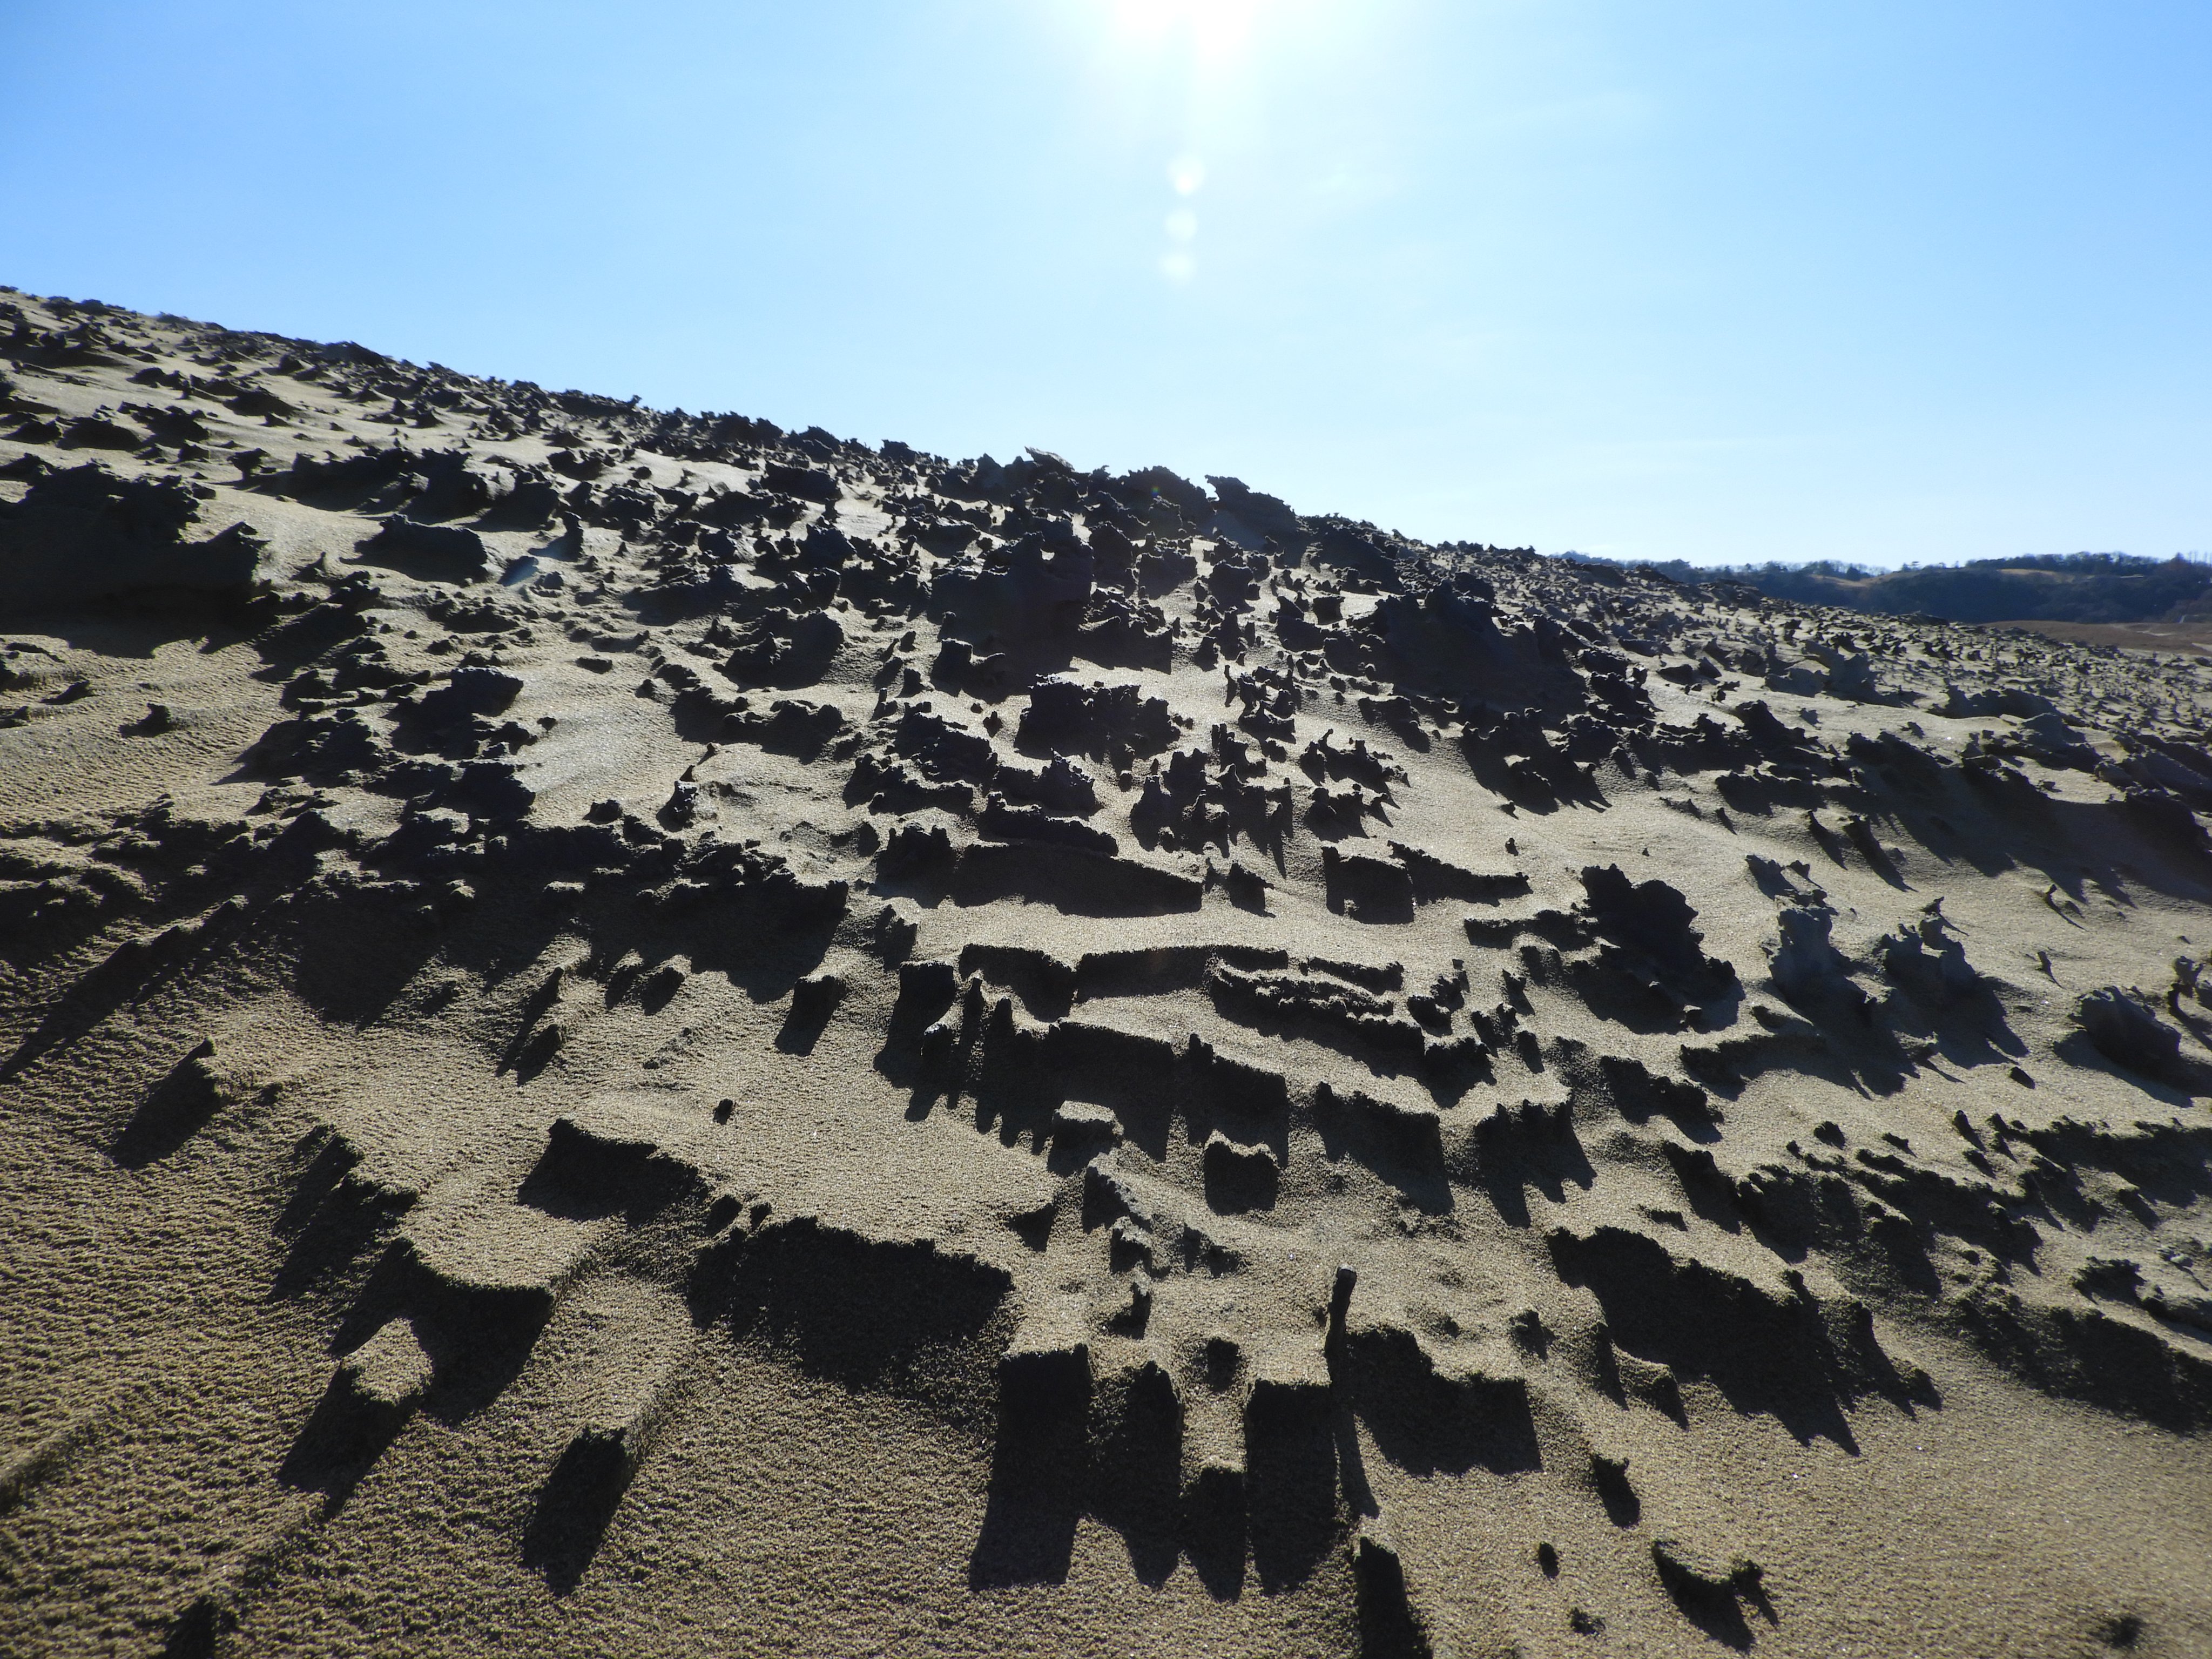 鳥取砂丘ビジターセンター 今日の鳥取砂丘 その 風が作る砂の模様の数々が楽しめます キレイな風紋 ゴツゴツの砂柱 さちゅう そして馬の背の斜面では砂簾 されん 飛砂で砂が削れた部分では ラミナ 訪れた方はゆっくり散策を楽しんでくださいね